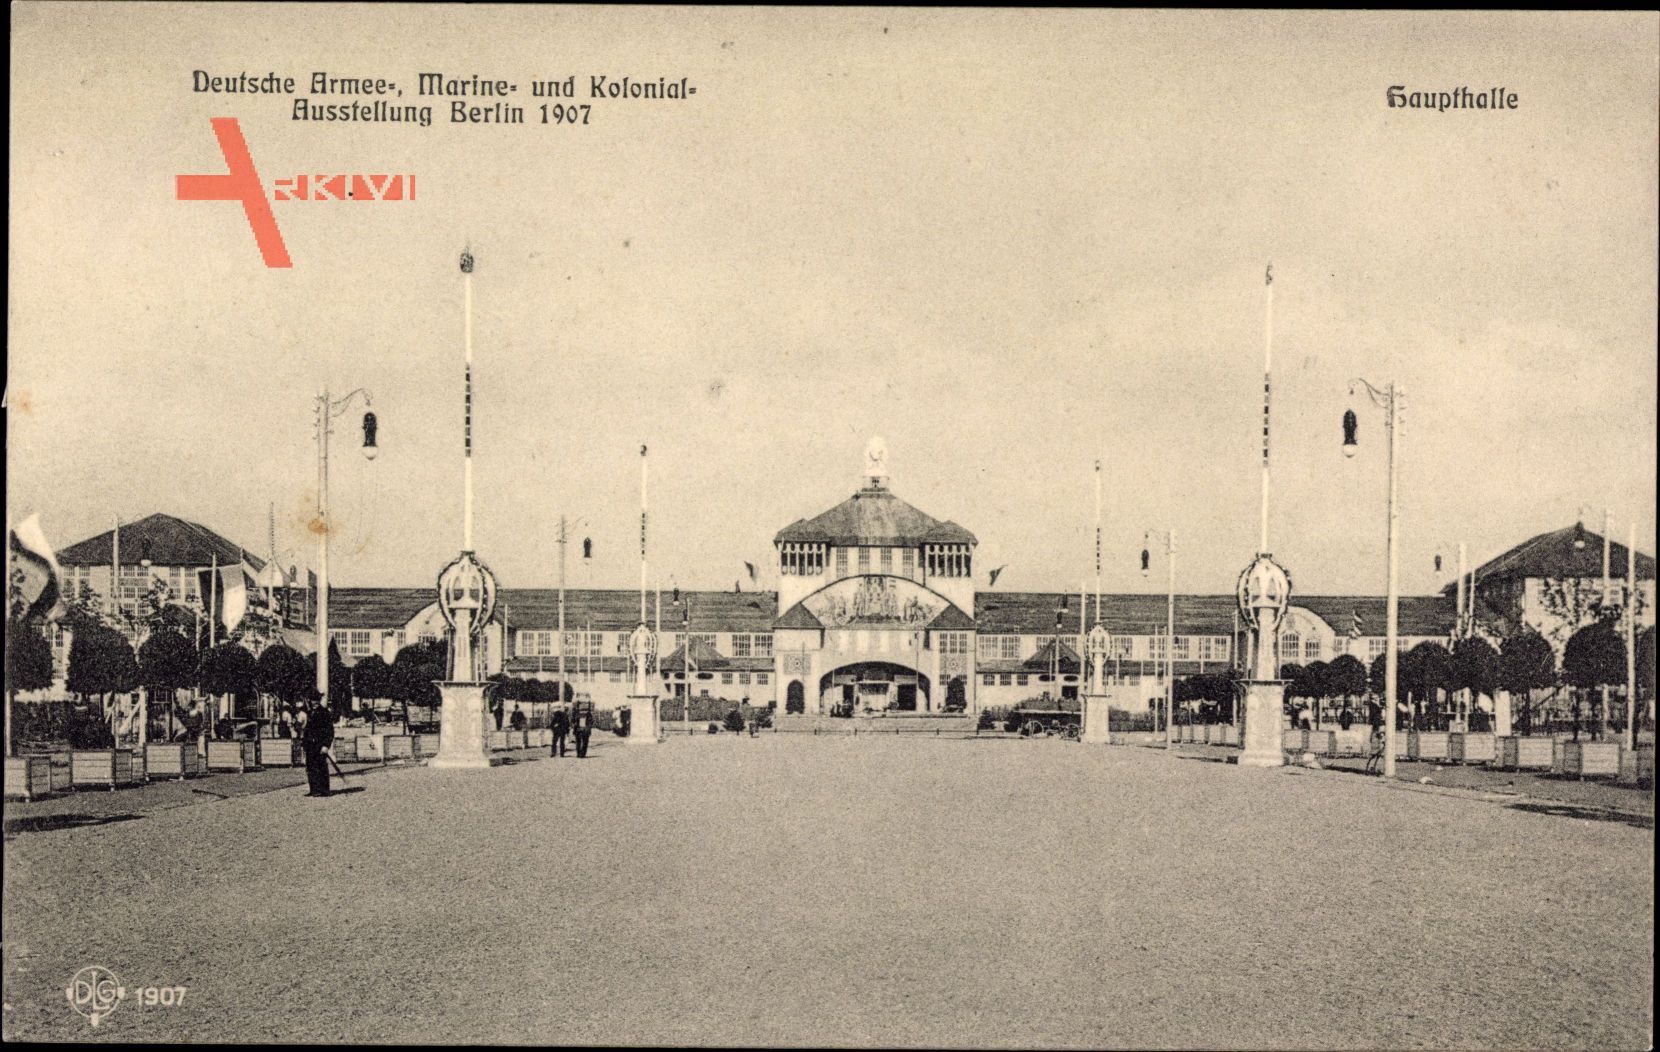 Berlin, Deutsche Armee Marine und Kolonialausstellung 1907, Haupthalle